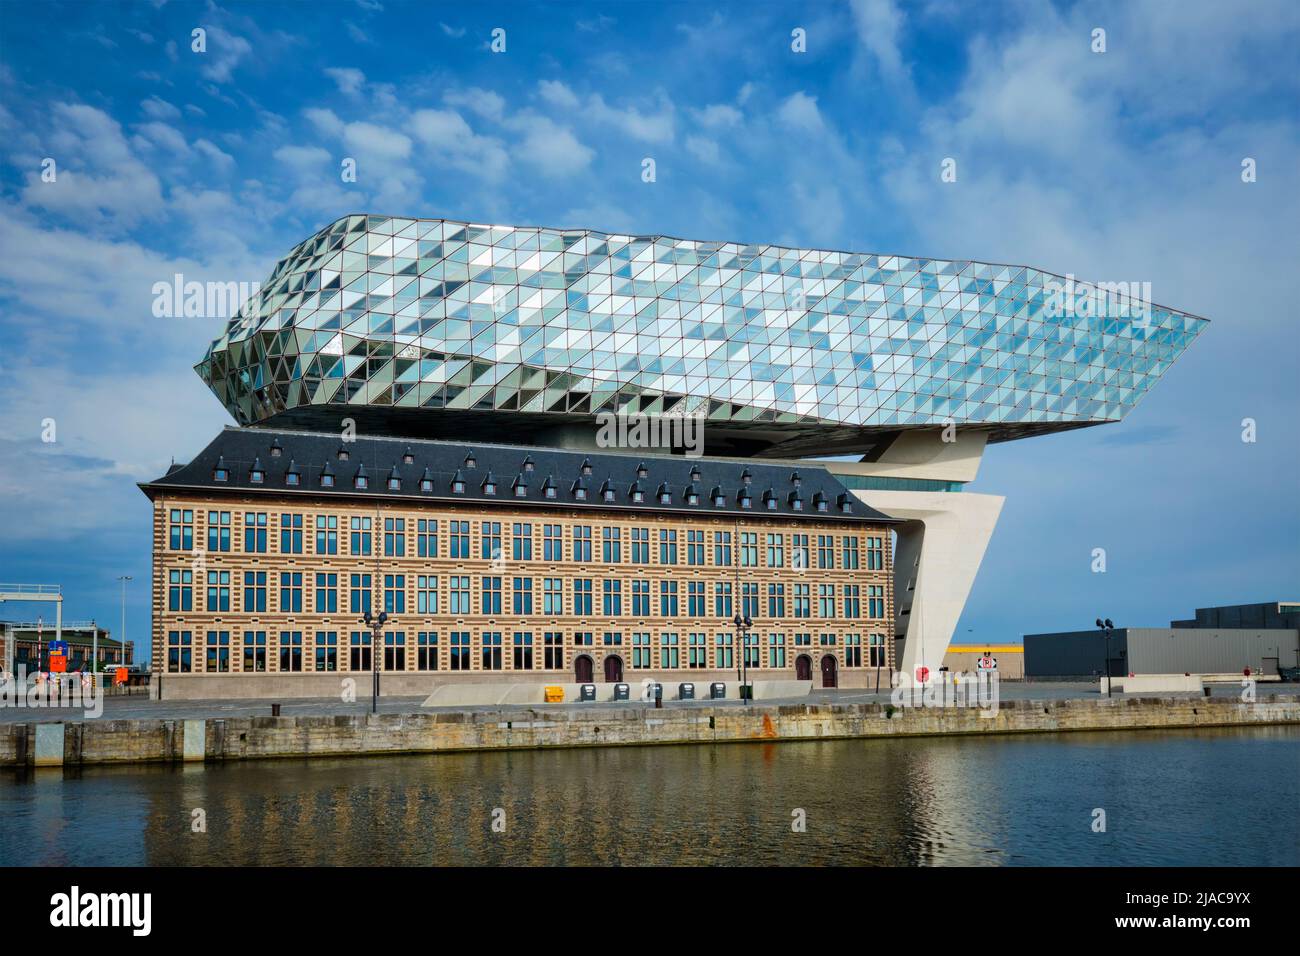 Casa de la autoridad portuaria (Porthuis) diseñada por los famosos arquitectos Zaha Hadid. Amberes, Bélgica Foto de stock